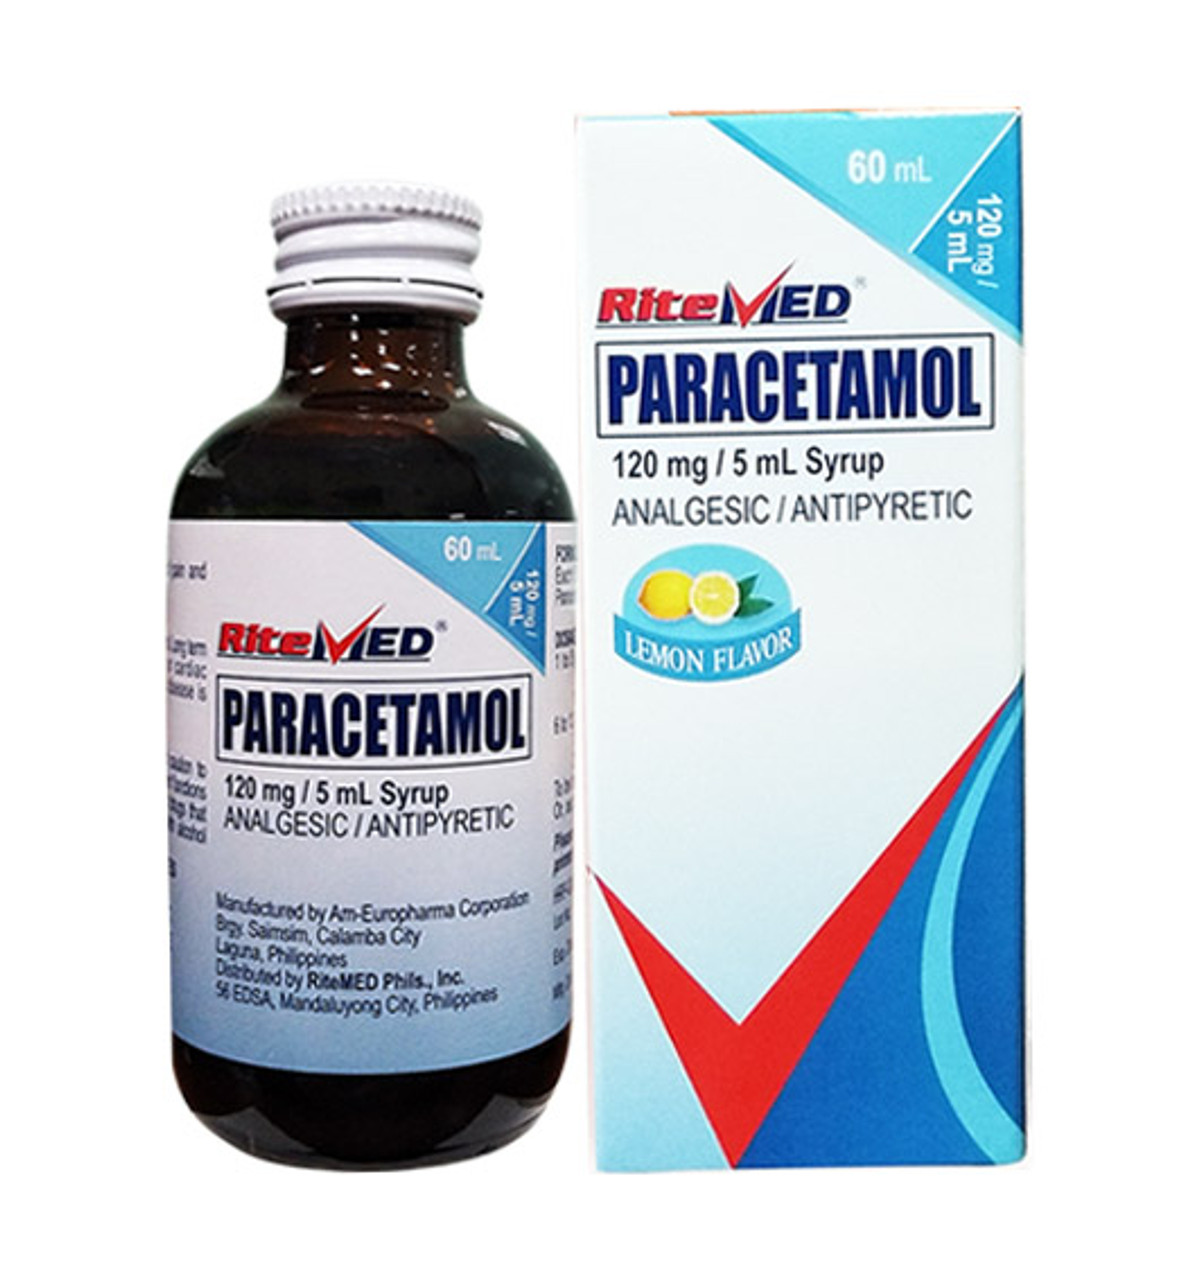 PARACETAMOL TIS 120mg/5ml, syrup - Tis Farmaceutic